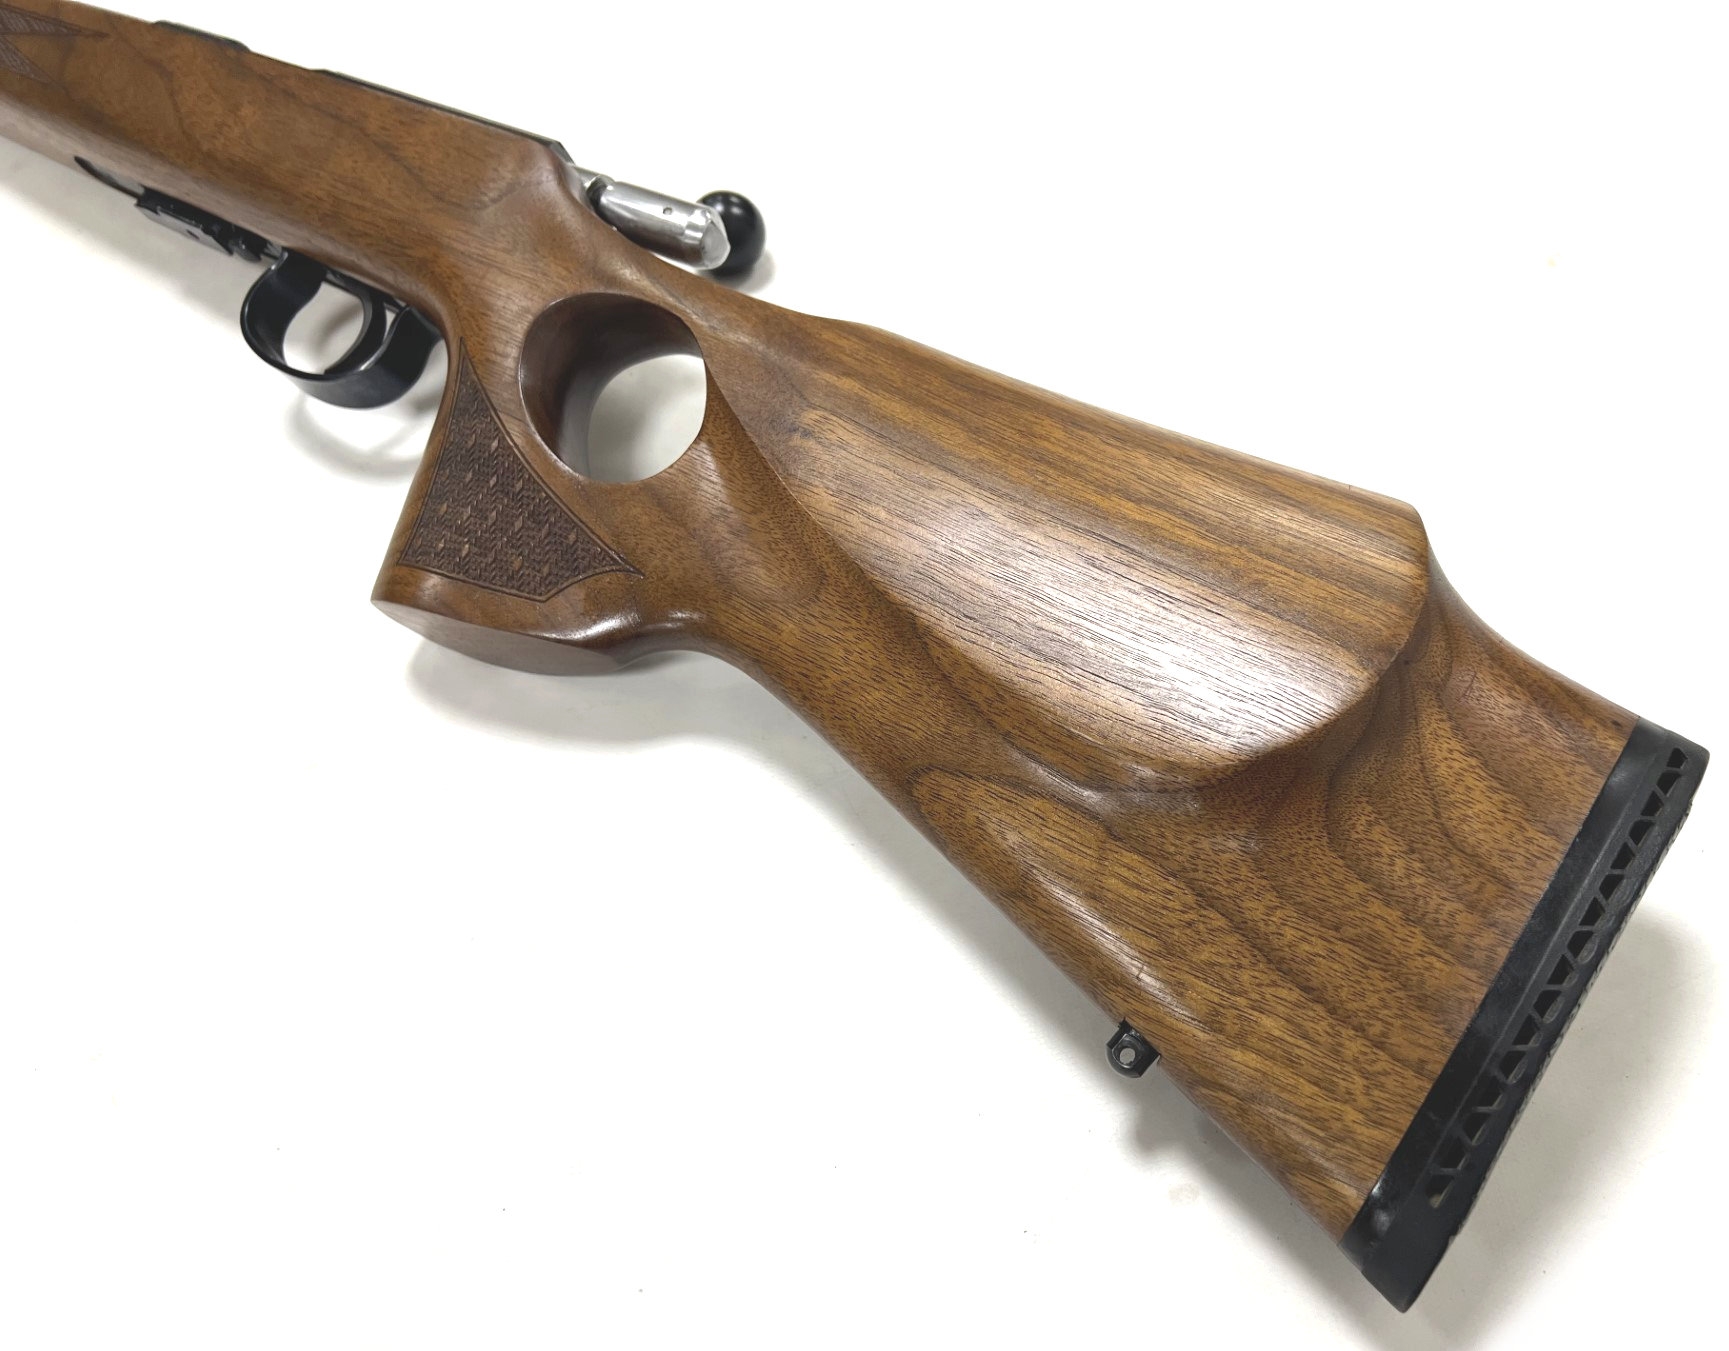 used anschutz 1517 walnut thumbhole rifle